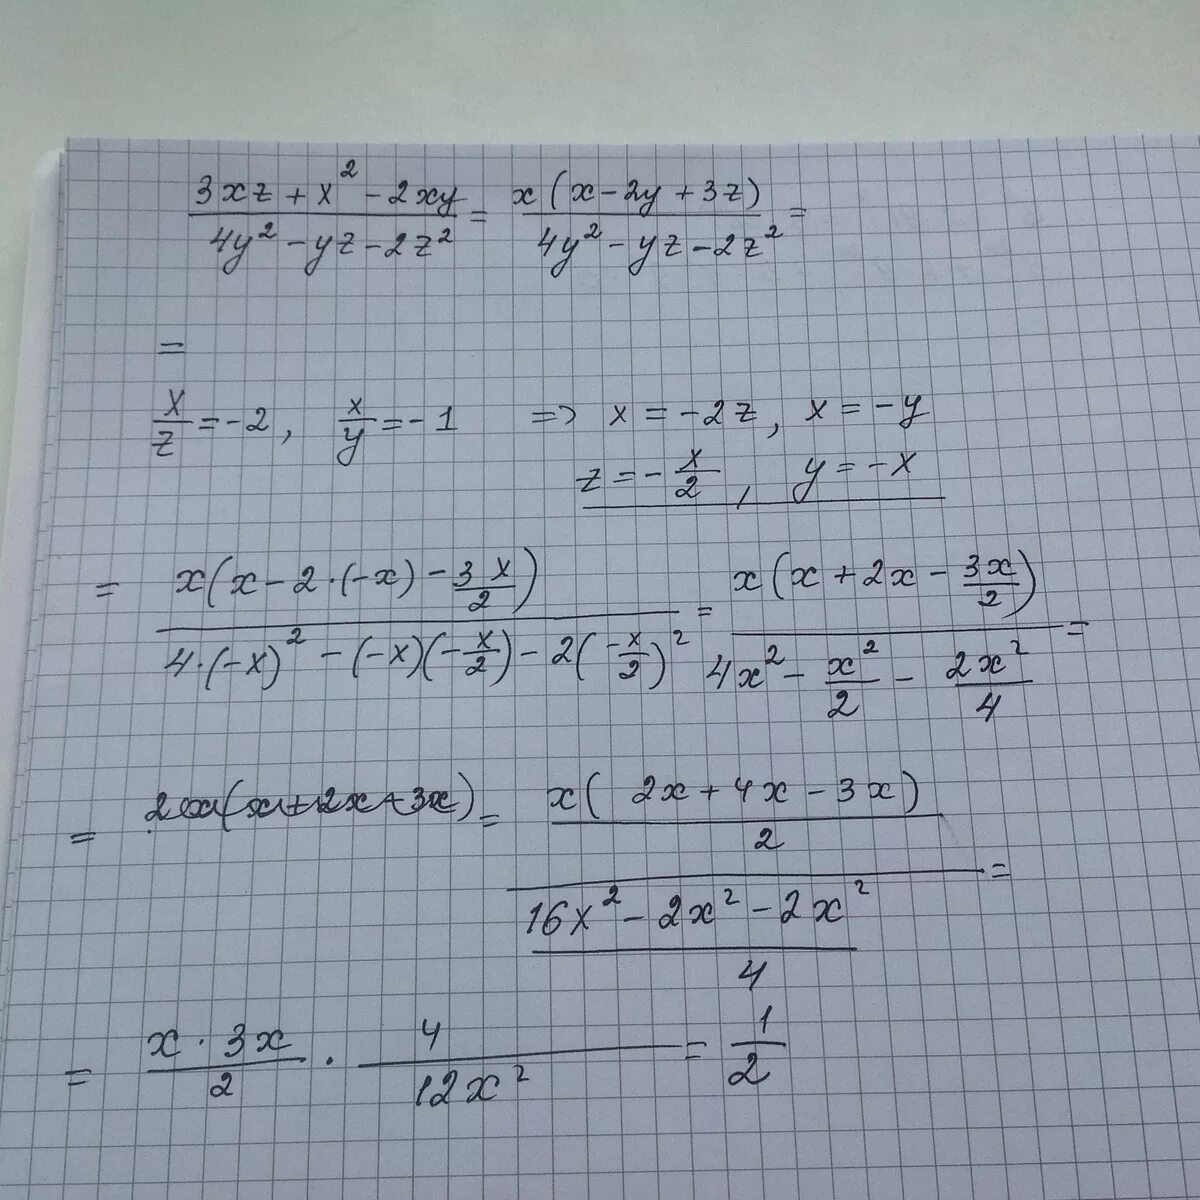 Z xy x y 3. Вычисление значений дроби. У`- X^2 У = 2 XY. X/2-X/2 дроби. X2+XY+xy2+y3 решение.